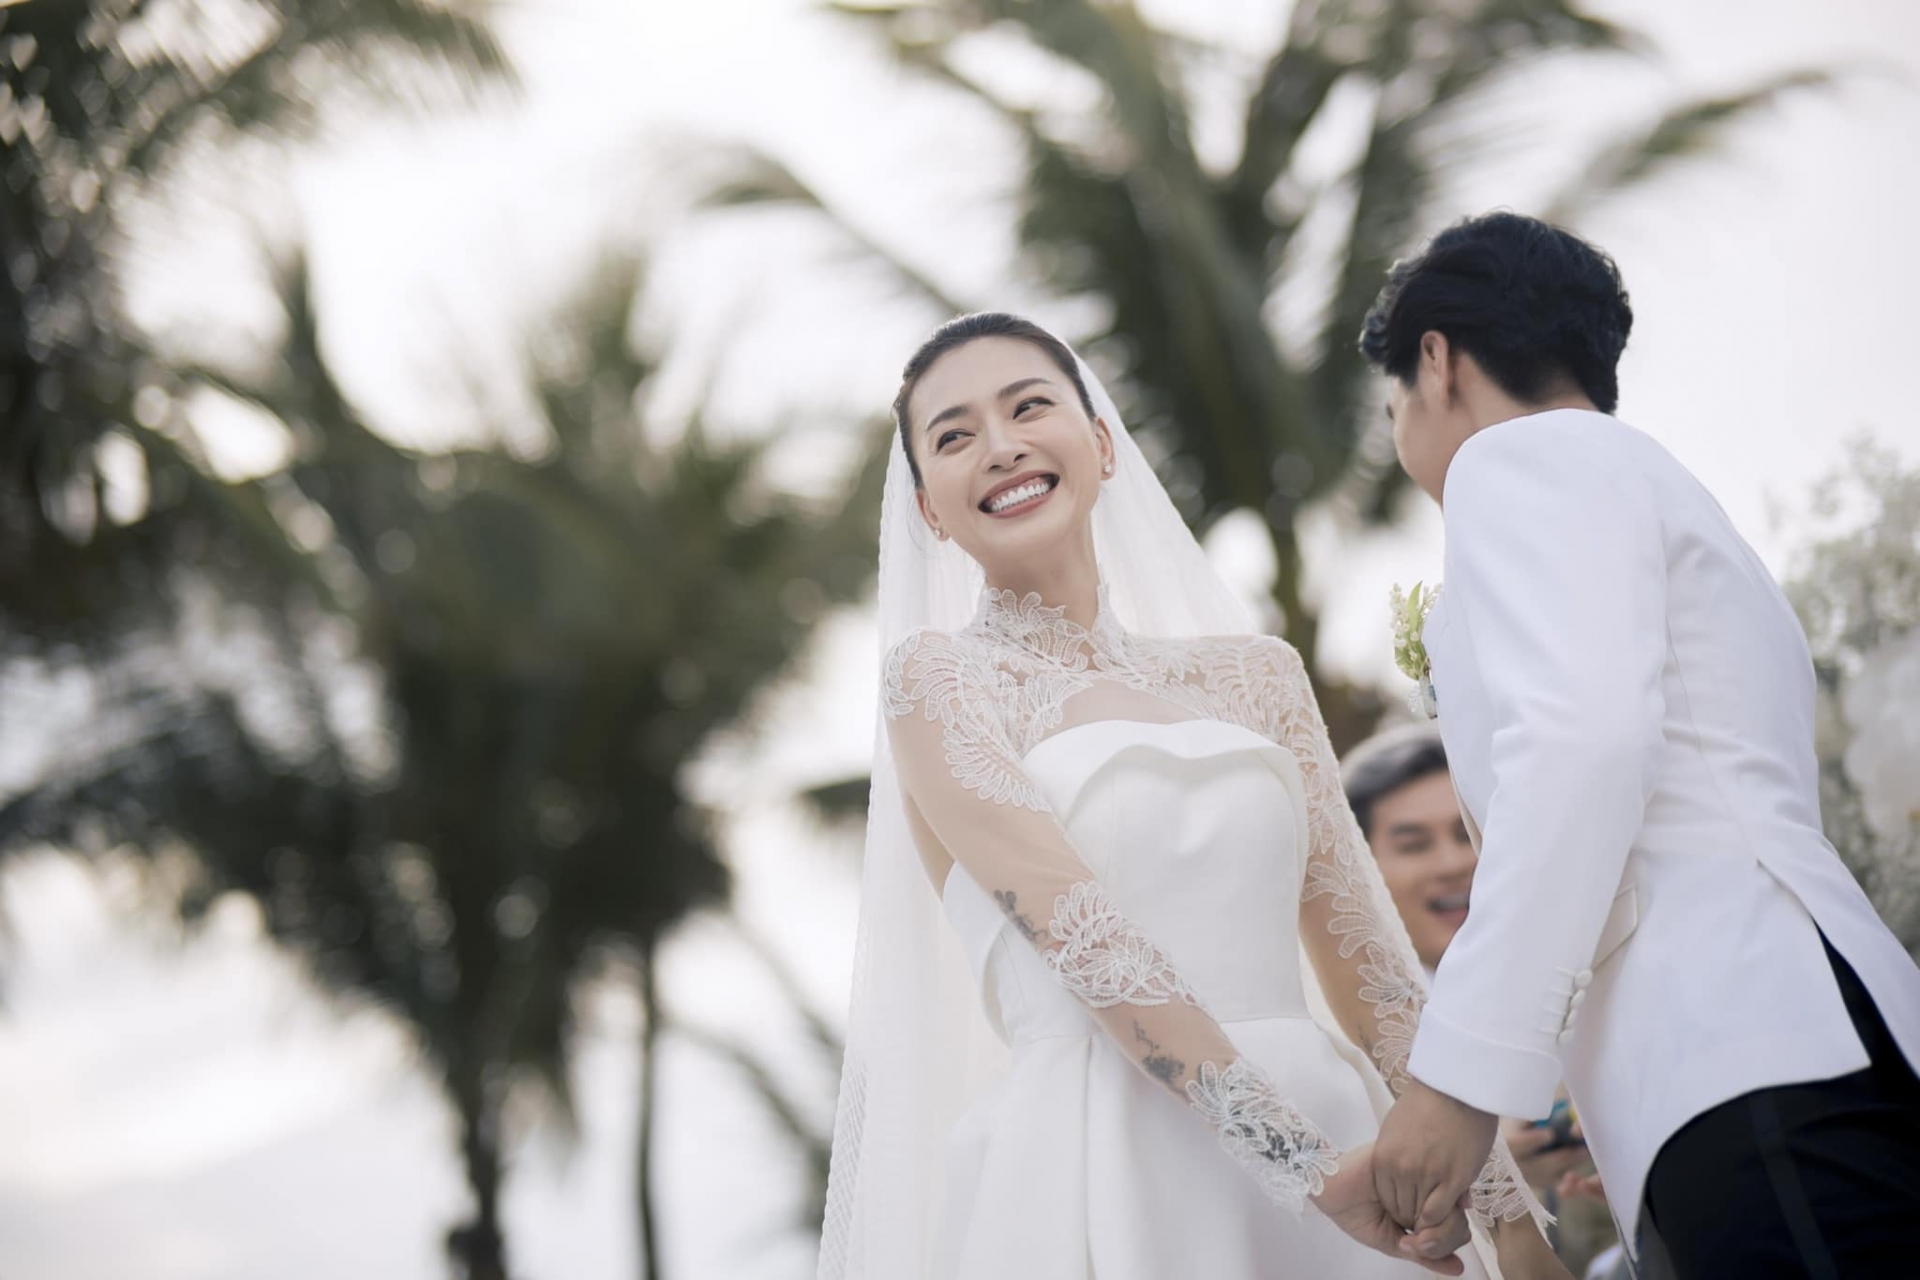 Đám cưới riêng tư và lộng lẫy của cặp đôi đẹp Ngô Thanh Vân - Huy Trần trong ngày 8/5 đã gây chấn động khắp cộng đồng mạng Việt Nam.